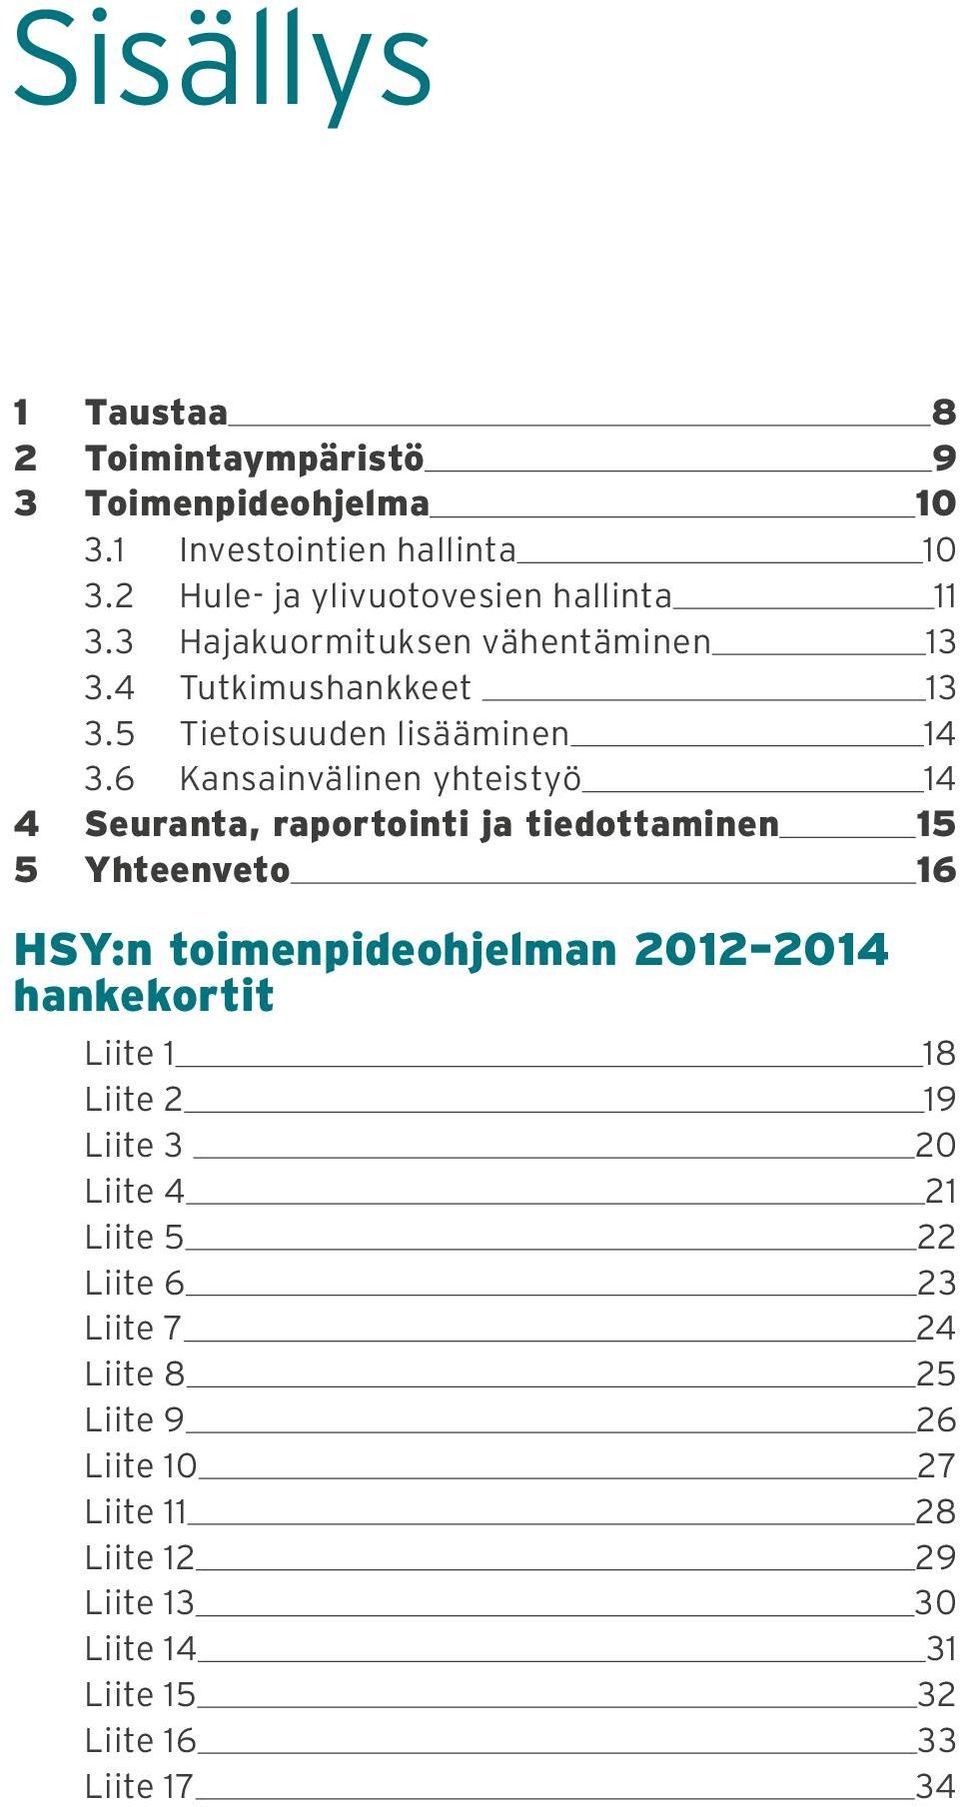 6 Kansainvälinen yhteistyö 14 4 Seuranta, raportointi ja tiedottaminen 15 5 Yhteenveto 16 HSY:n toimenpideohjelman 2012 2014 hankekortit